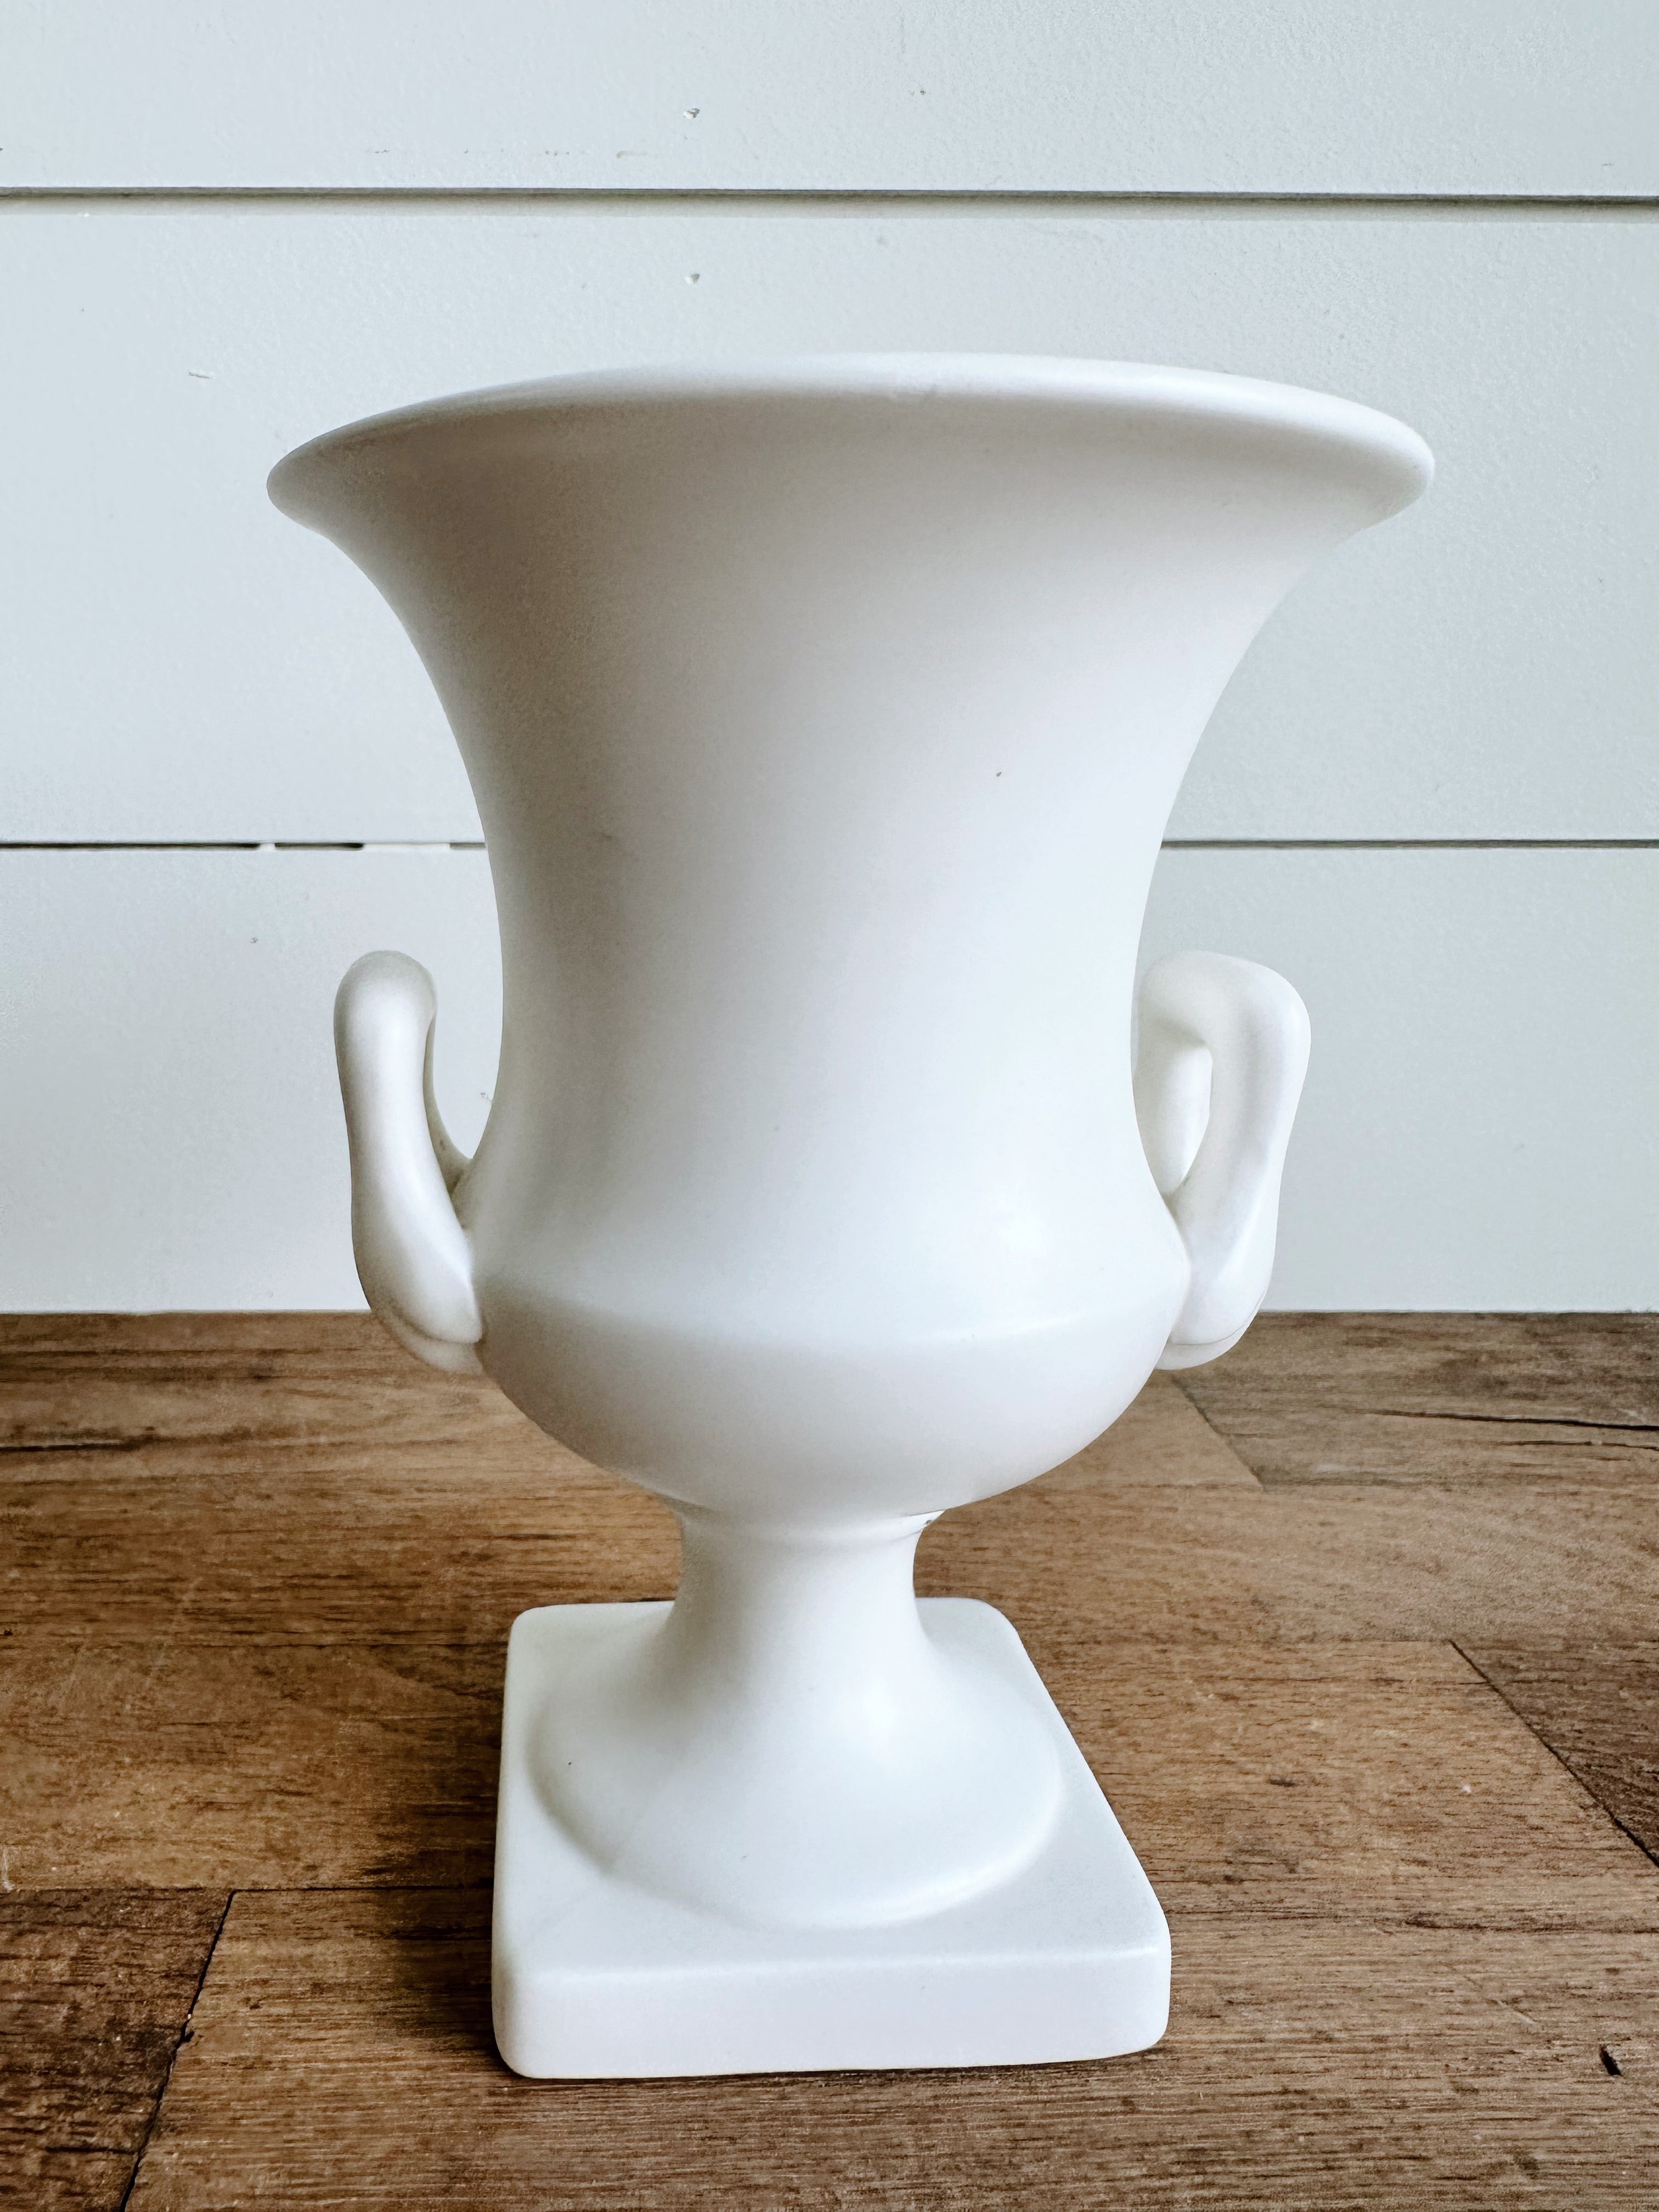 Vintage Urn Vase